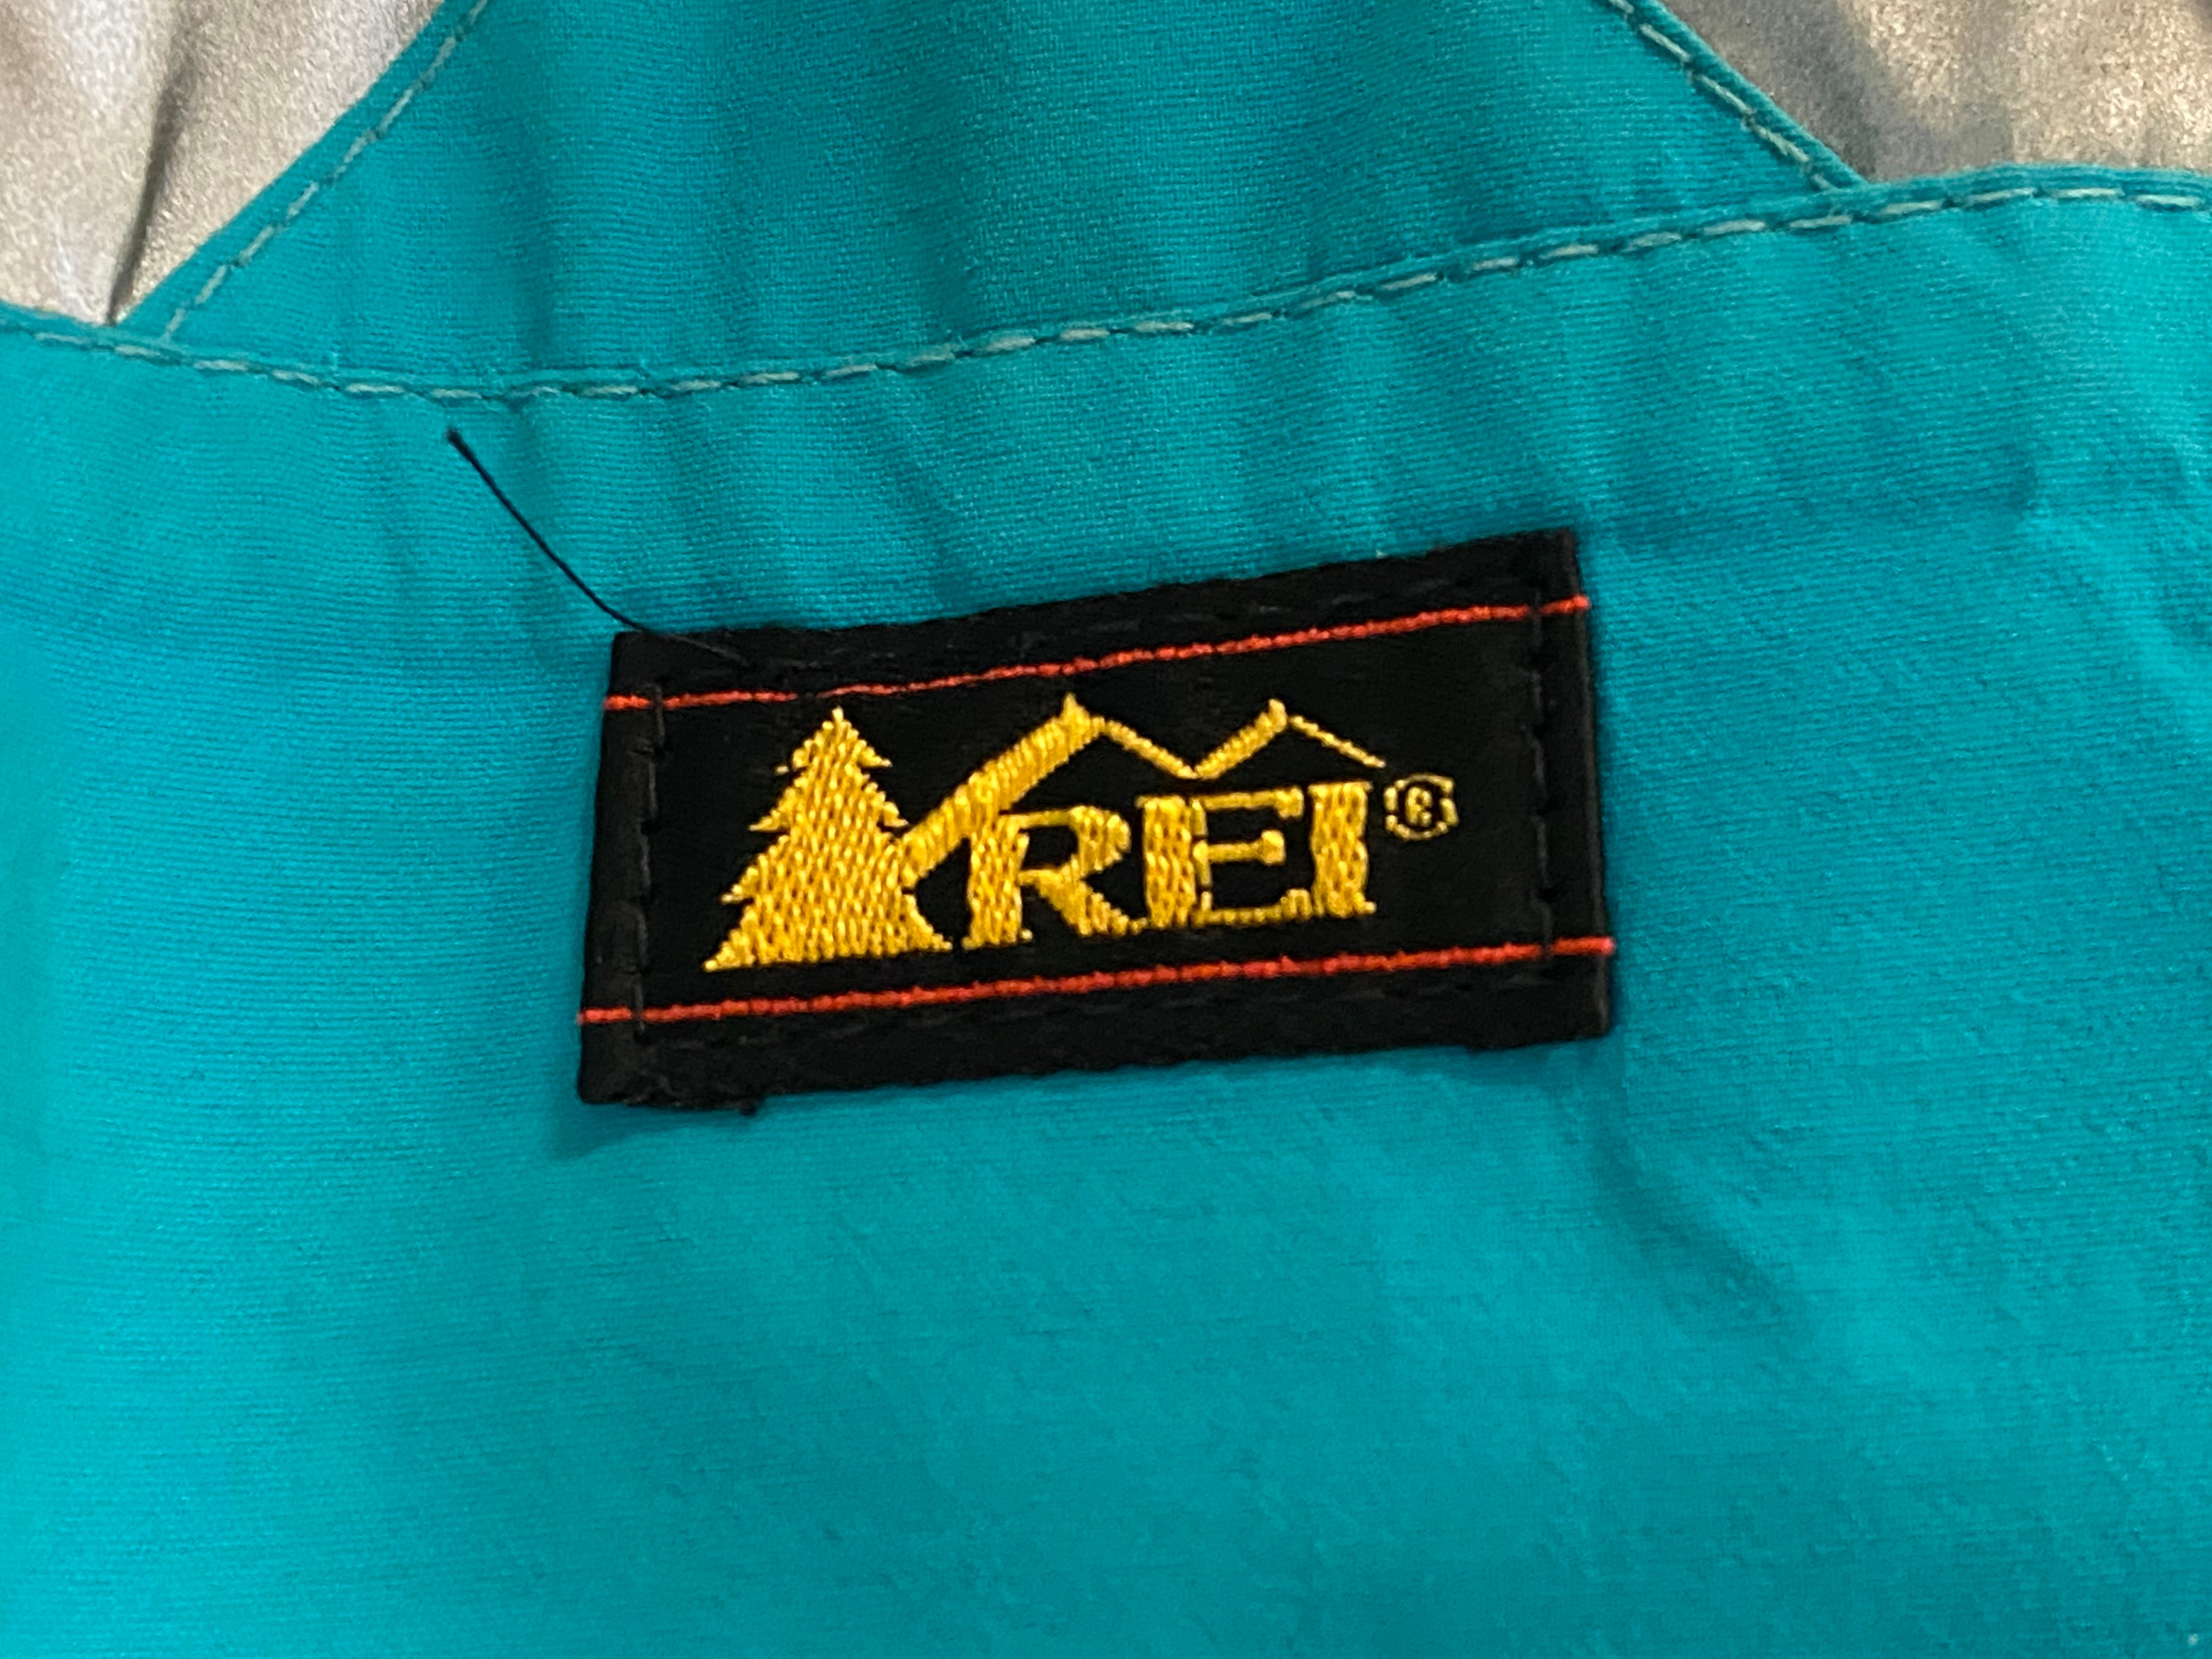 REI Gore Tex Zip Up Pullover Jacket - Aqua/Blue